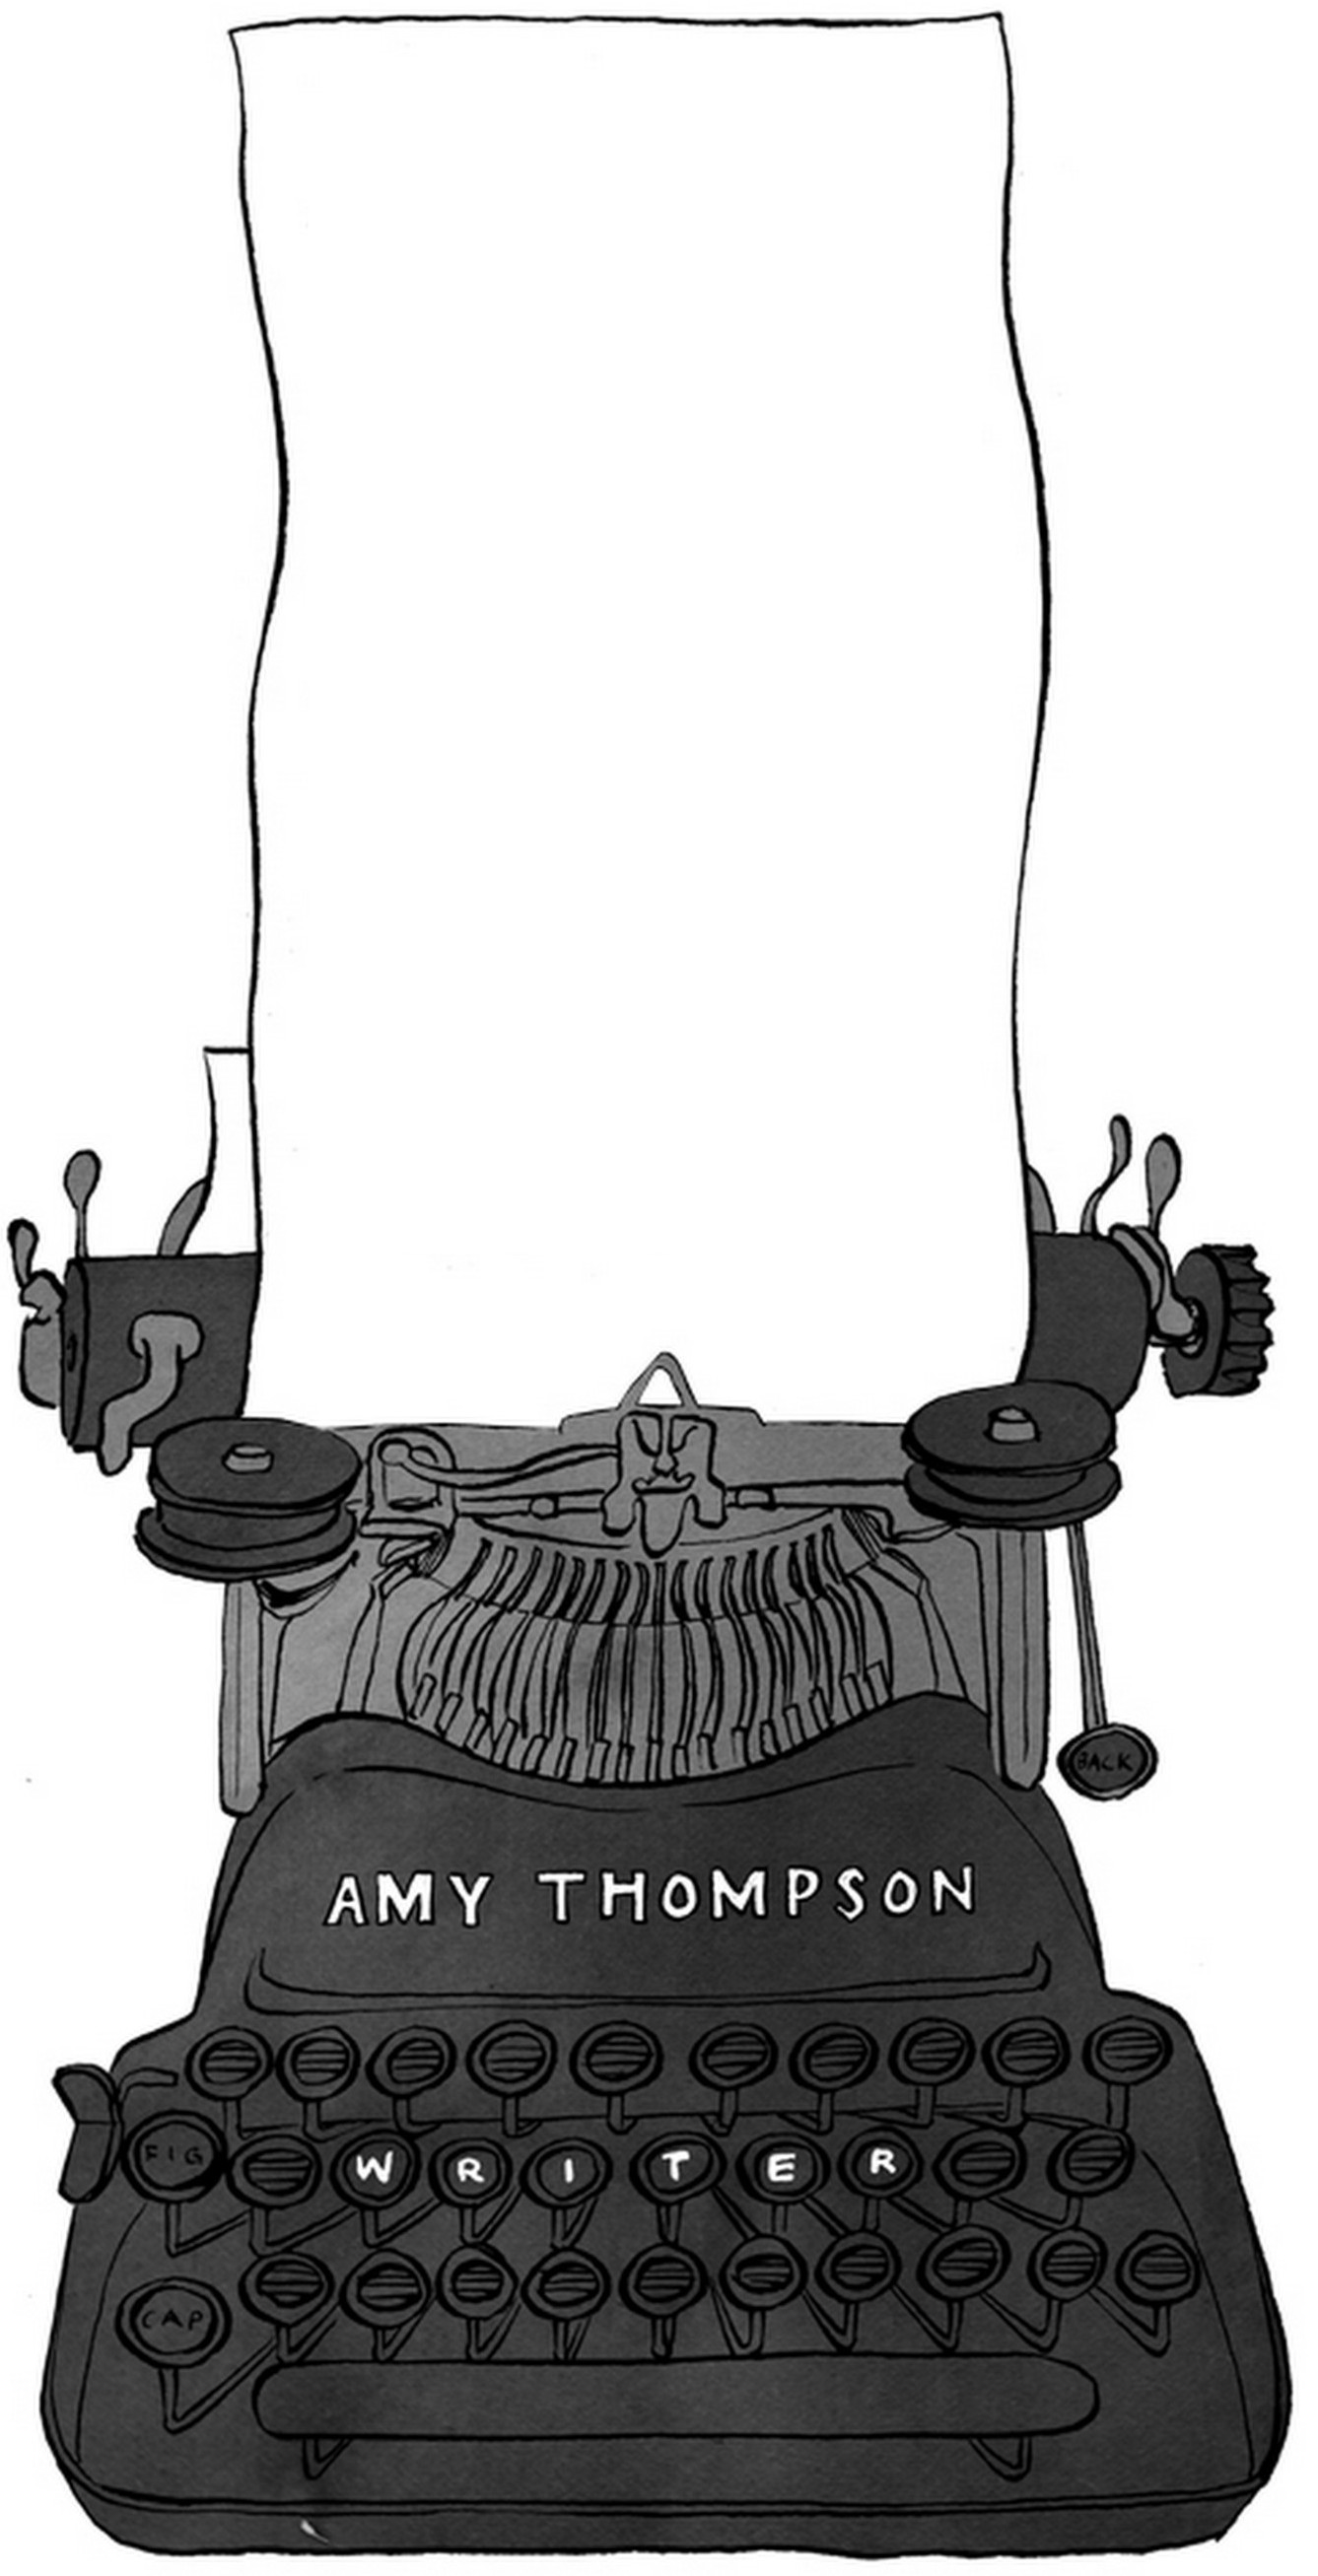 Amy Thompson Writes